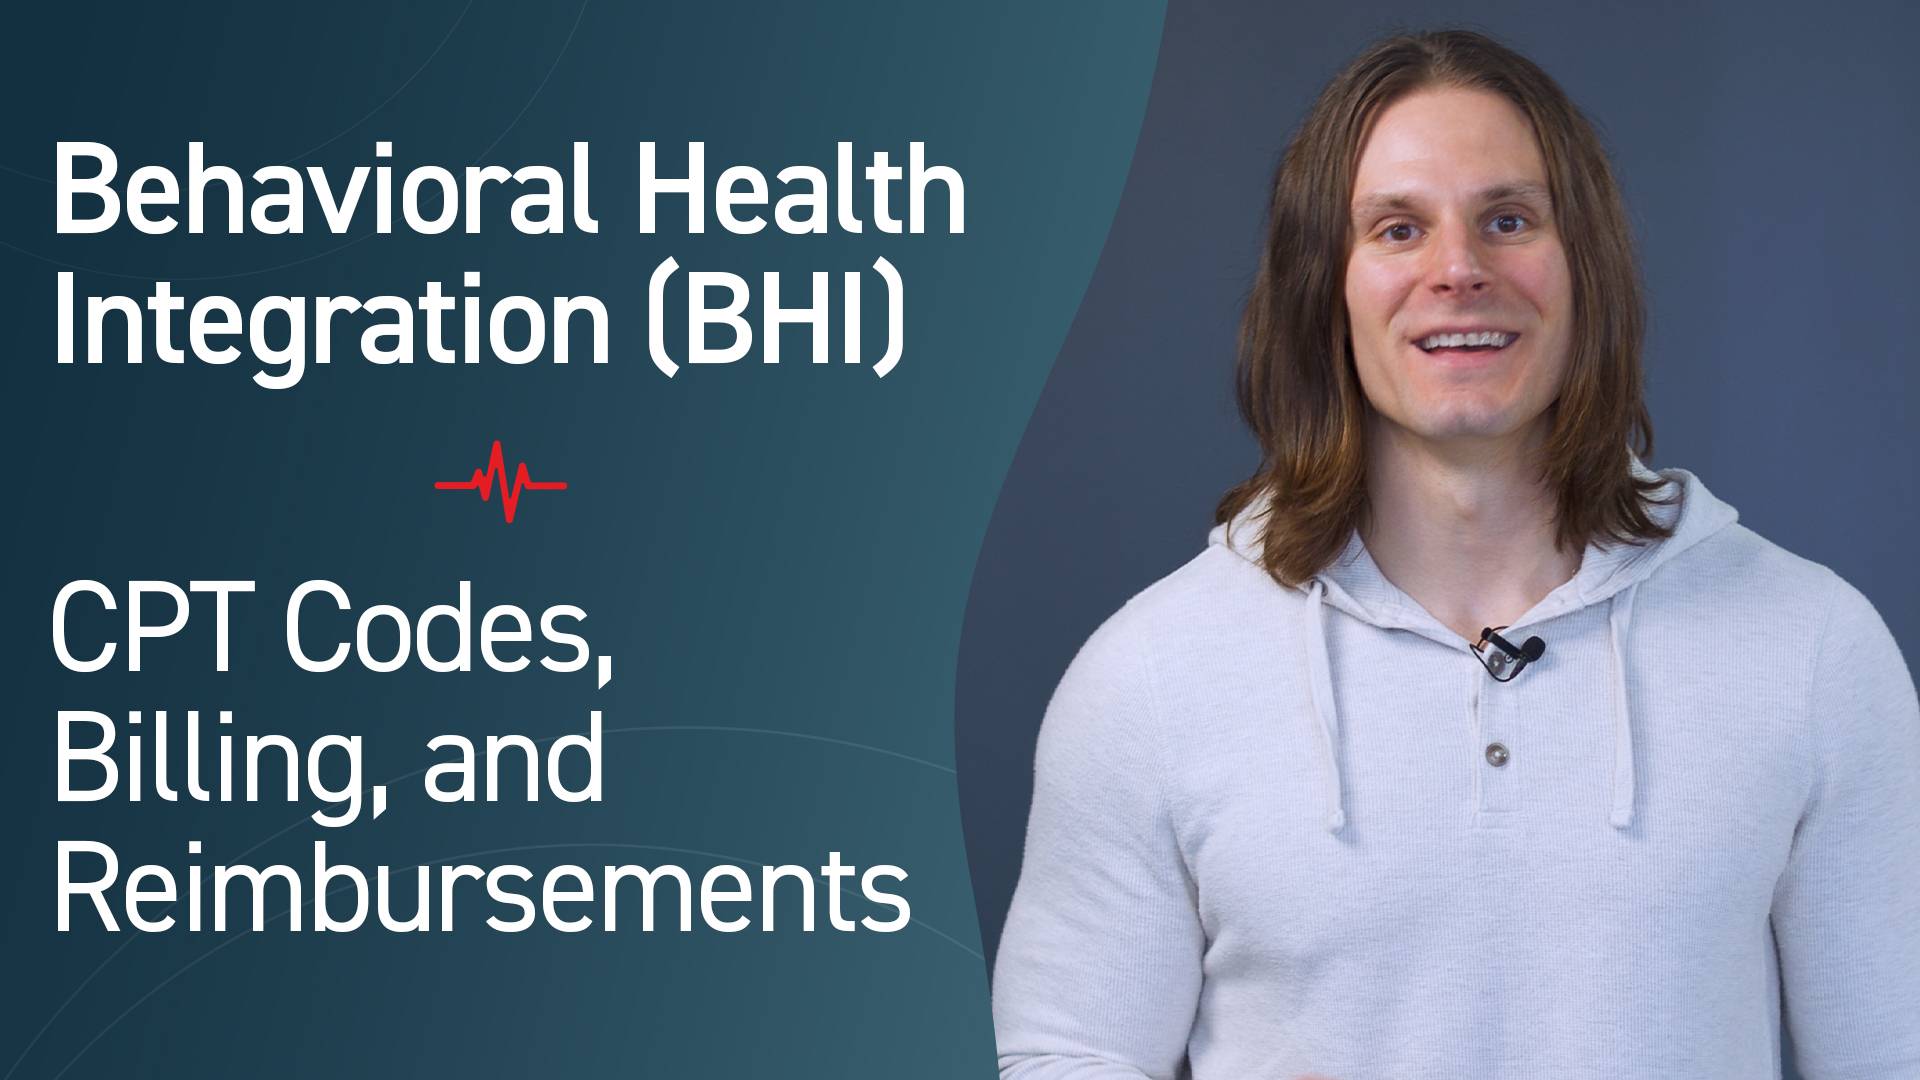 Behavioral Health Integration (BHI): CPT Codes, Billing, and Reimbursements